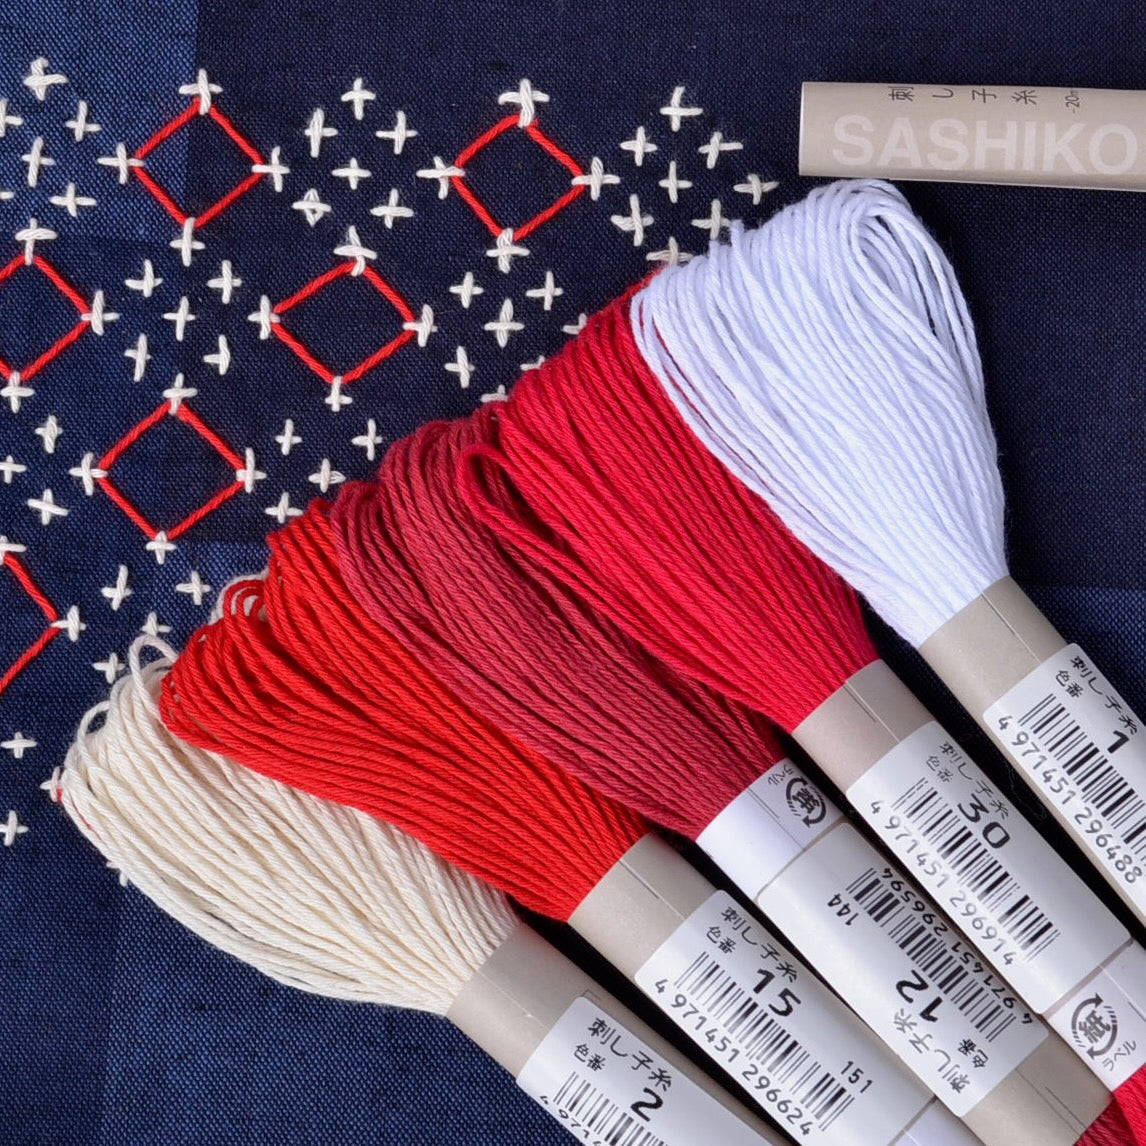 red and white  Olympus sashiko threads